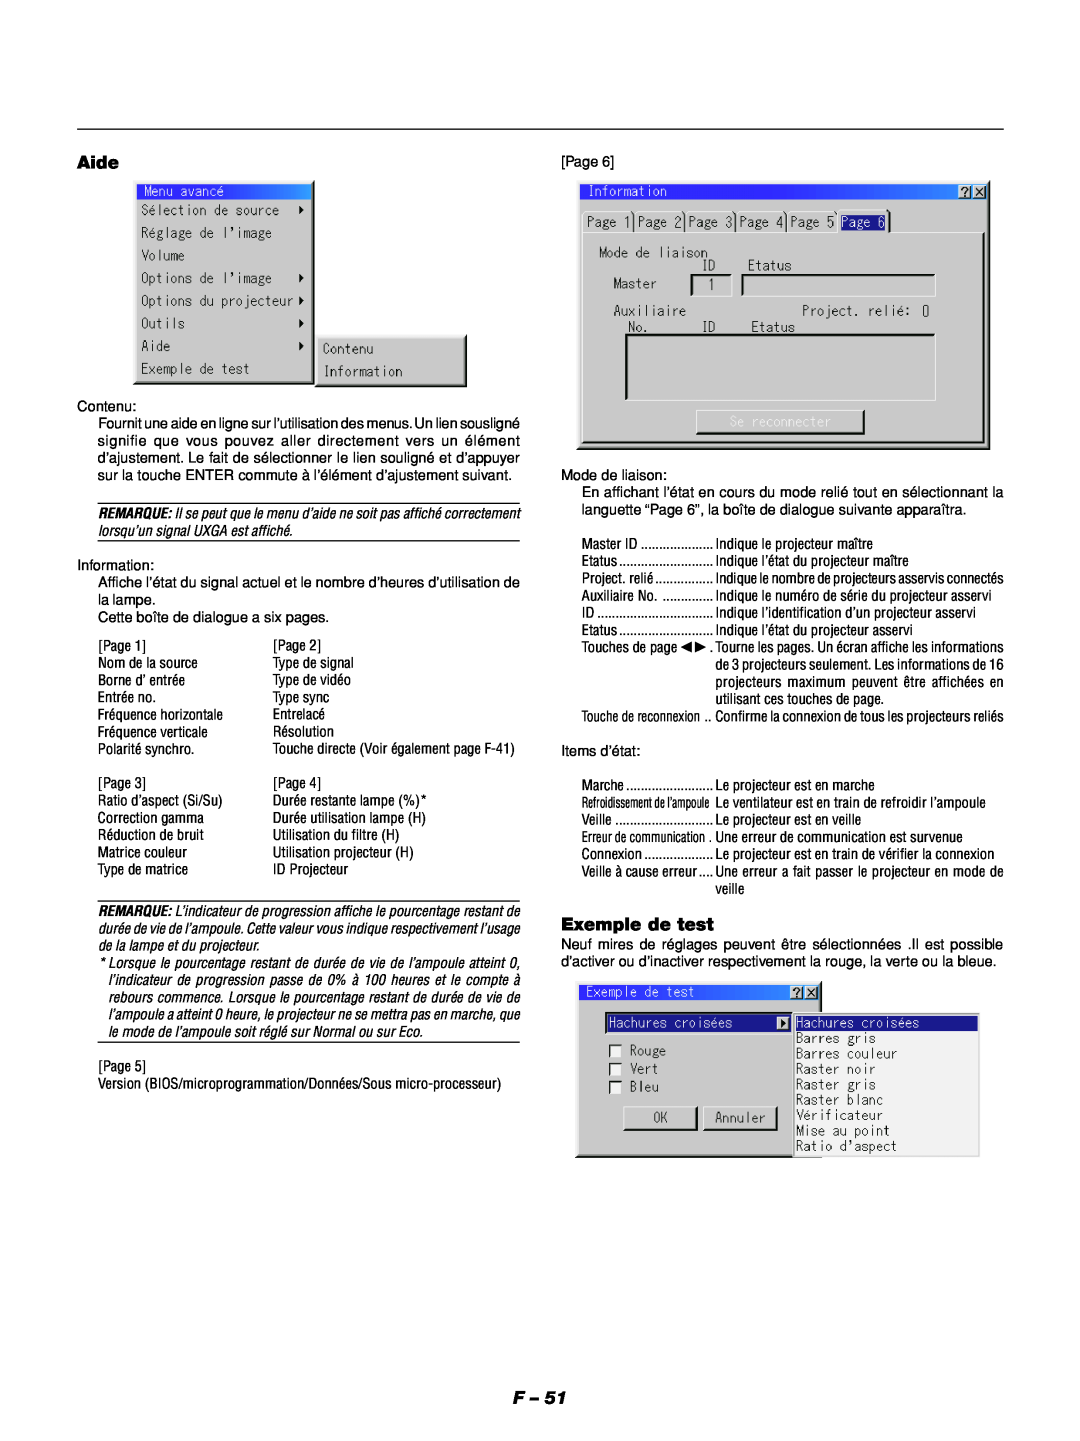 NEC GT1150 manuel dutilisation Aide, Exemple de test, Touche directe Voir également page F-41 